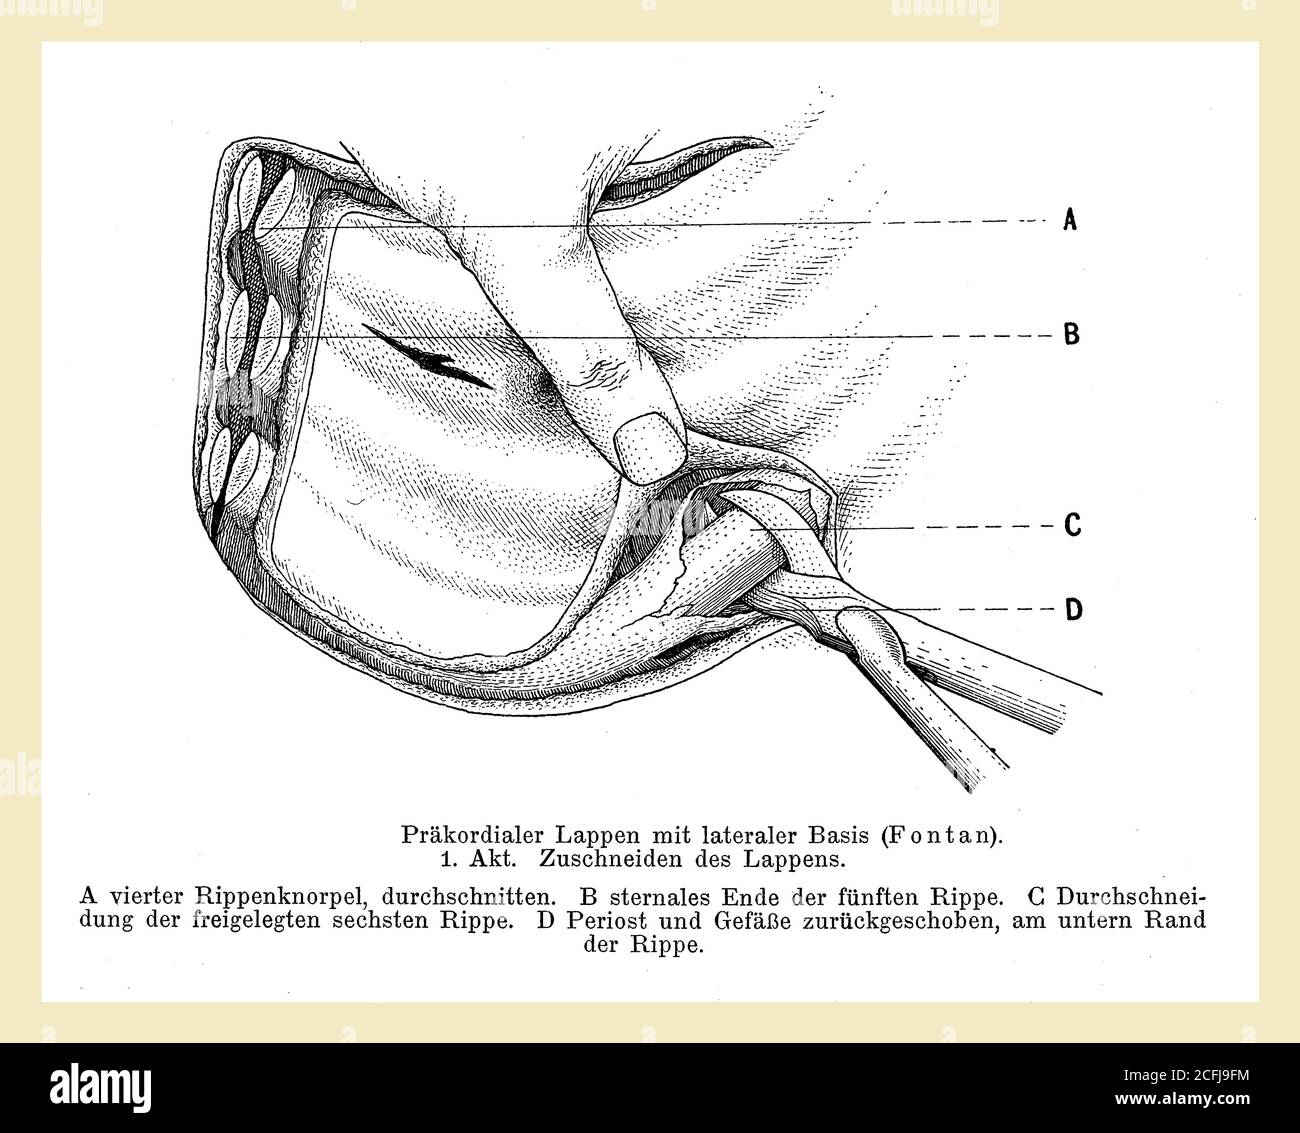 Gesundheitswesen und Medizin: Zeichnung, die erklärt, wie man einen Brustlappen-chirurgischen Schnitt mit deutschen Beschreibungen durchführt Stockfoto